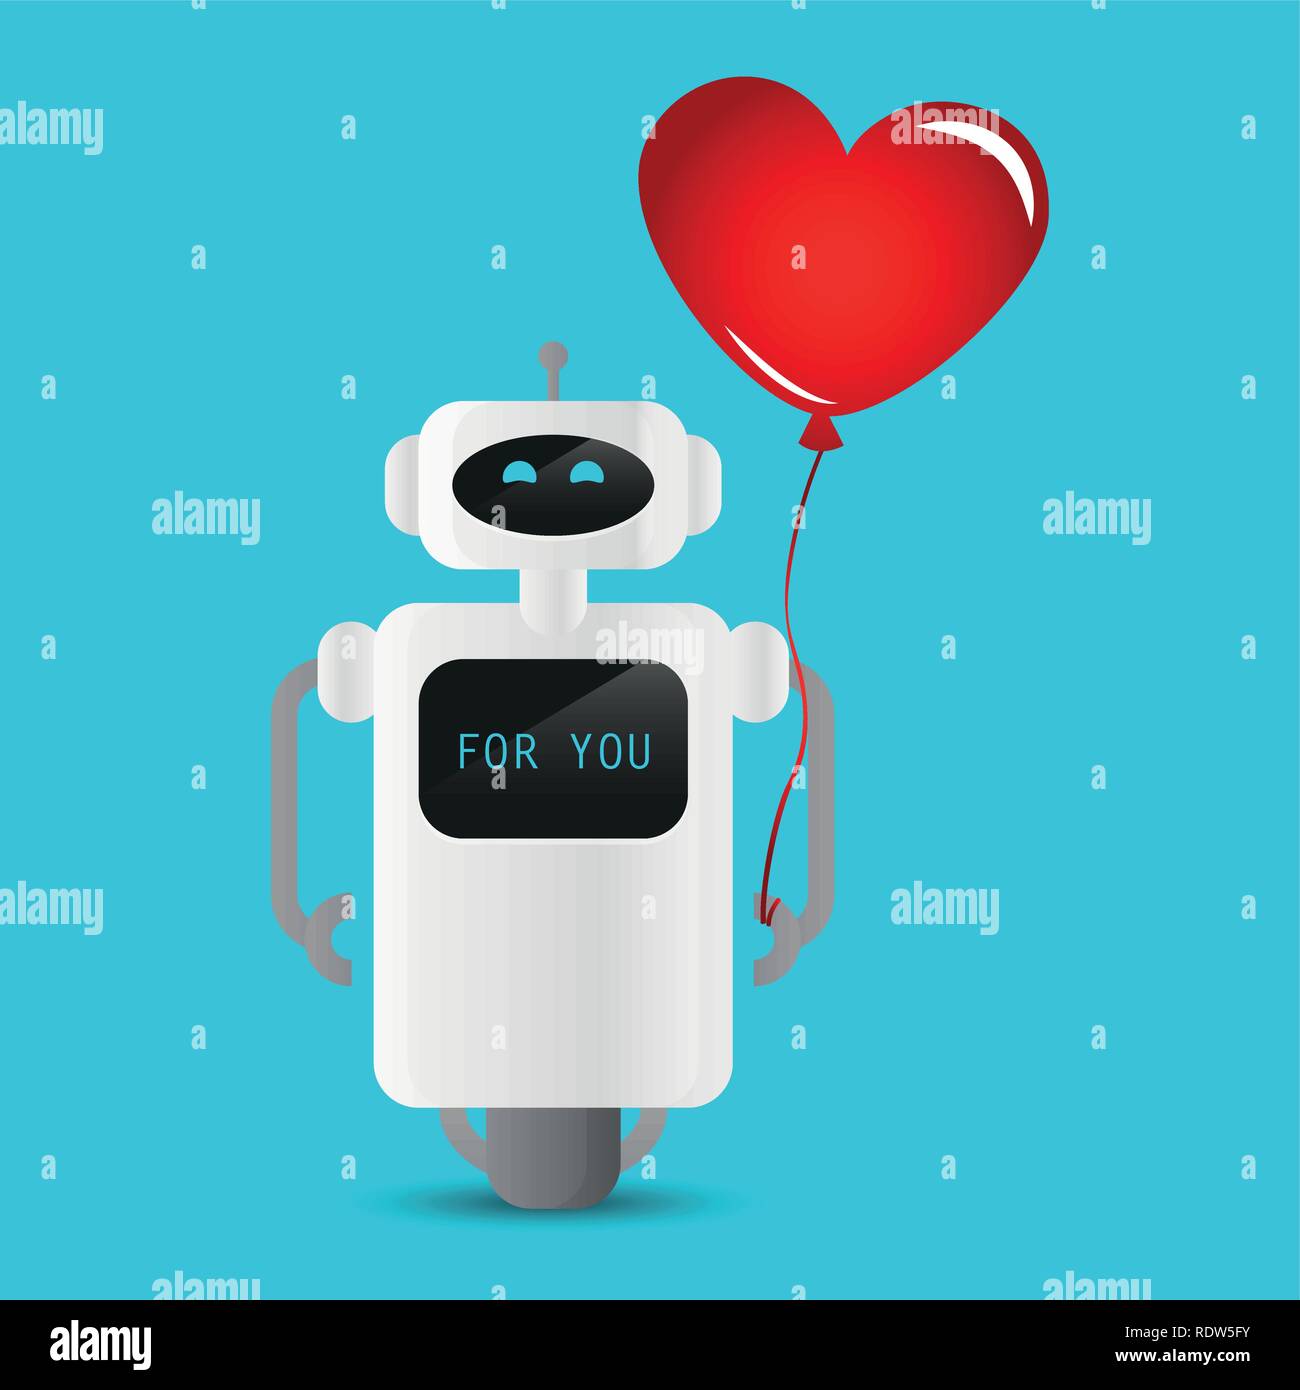 Robot mignon tenant un ballon en forme de coeur rouge illustration vecteur EPS10 Illustration de Vecteur